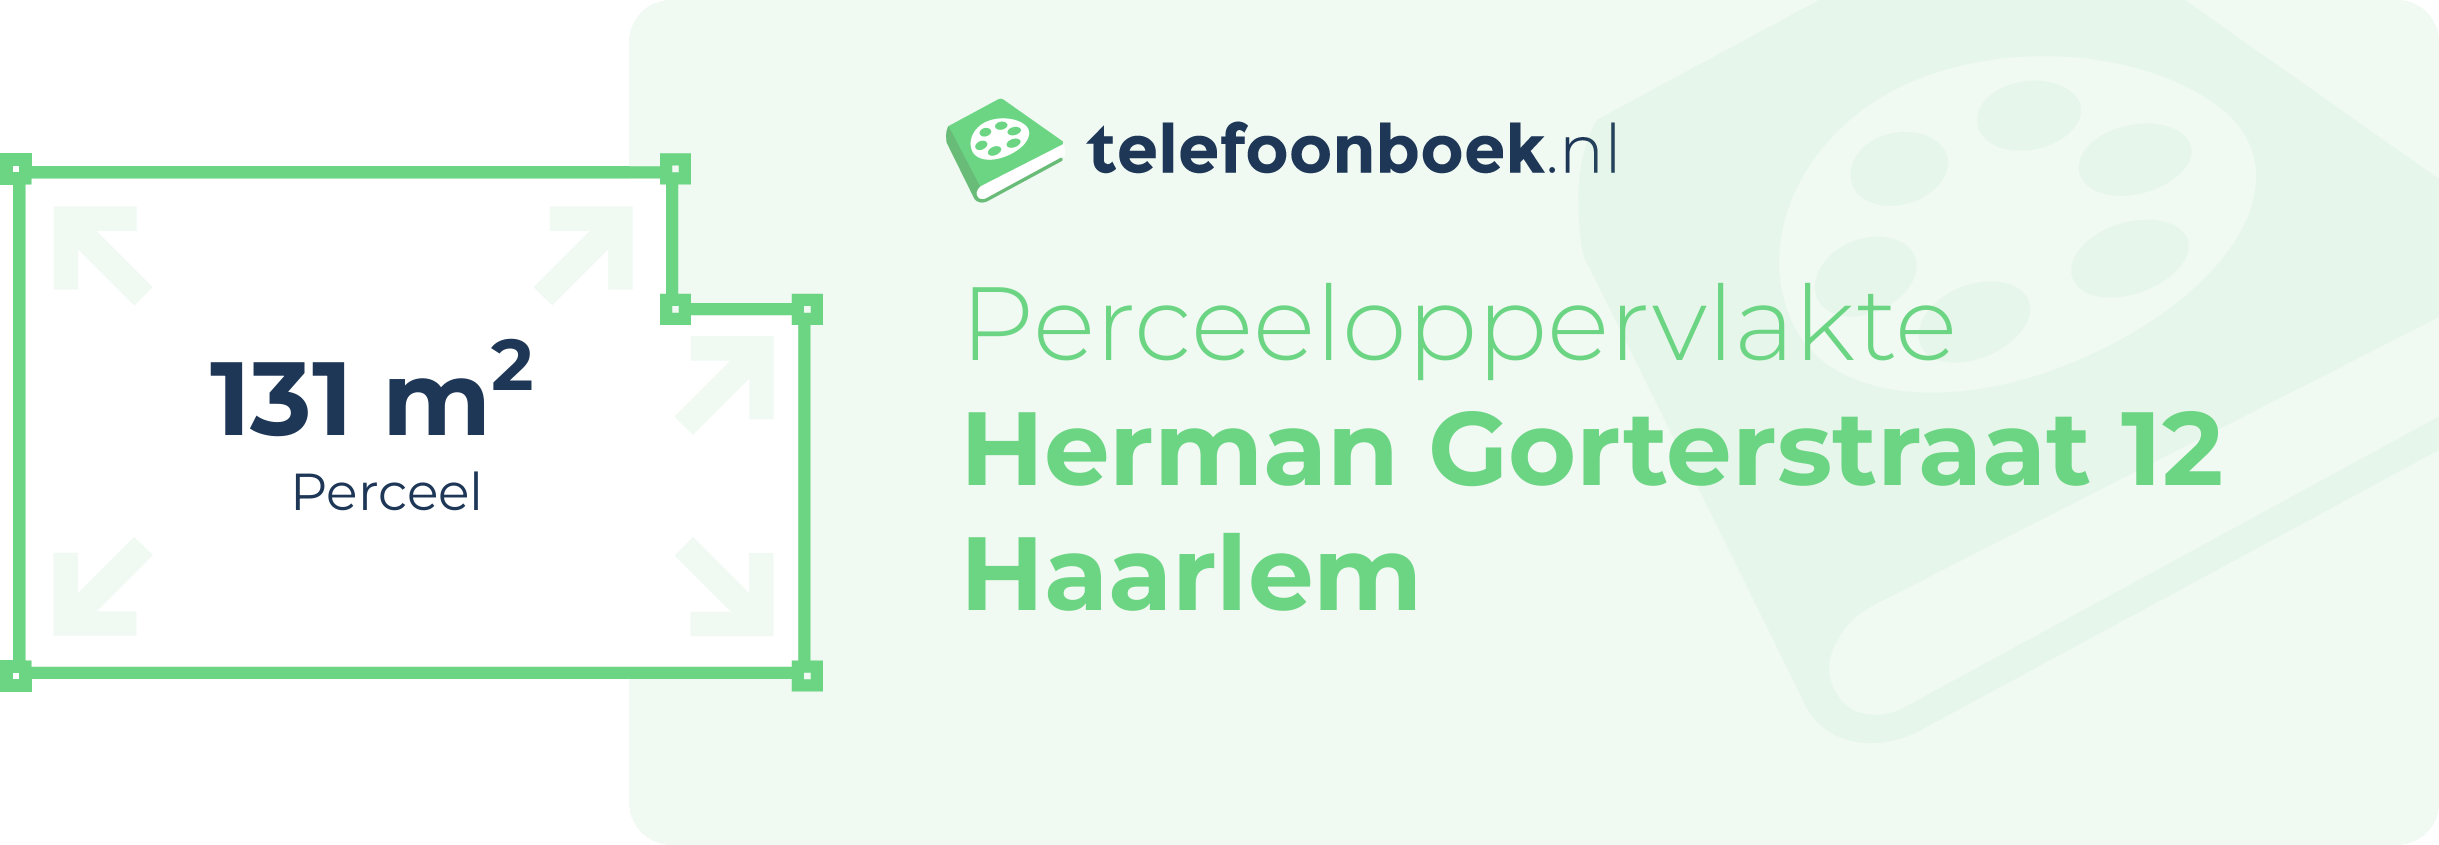 Perceeloppervlakte Herman Gorterstraat 12 Haarlem